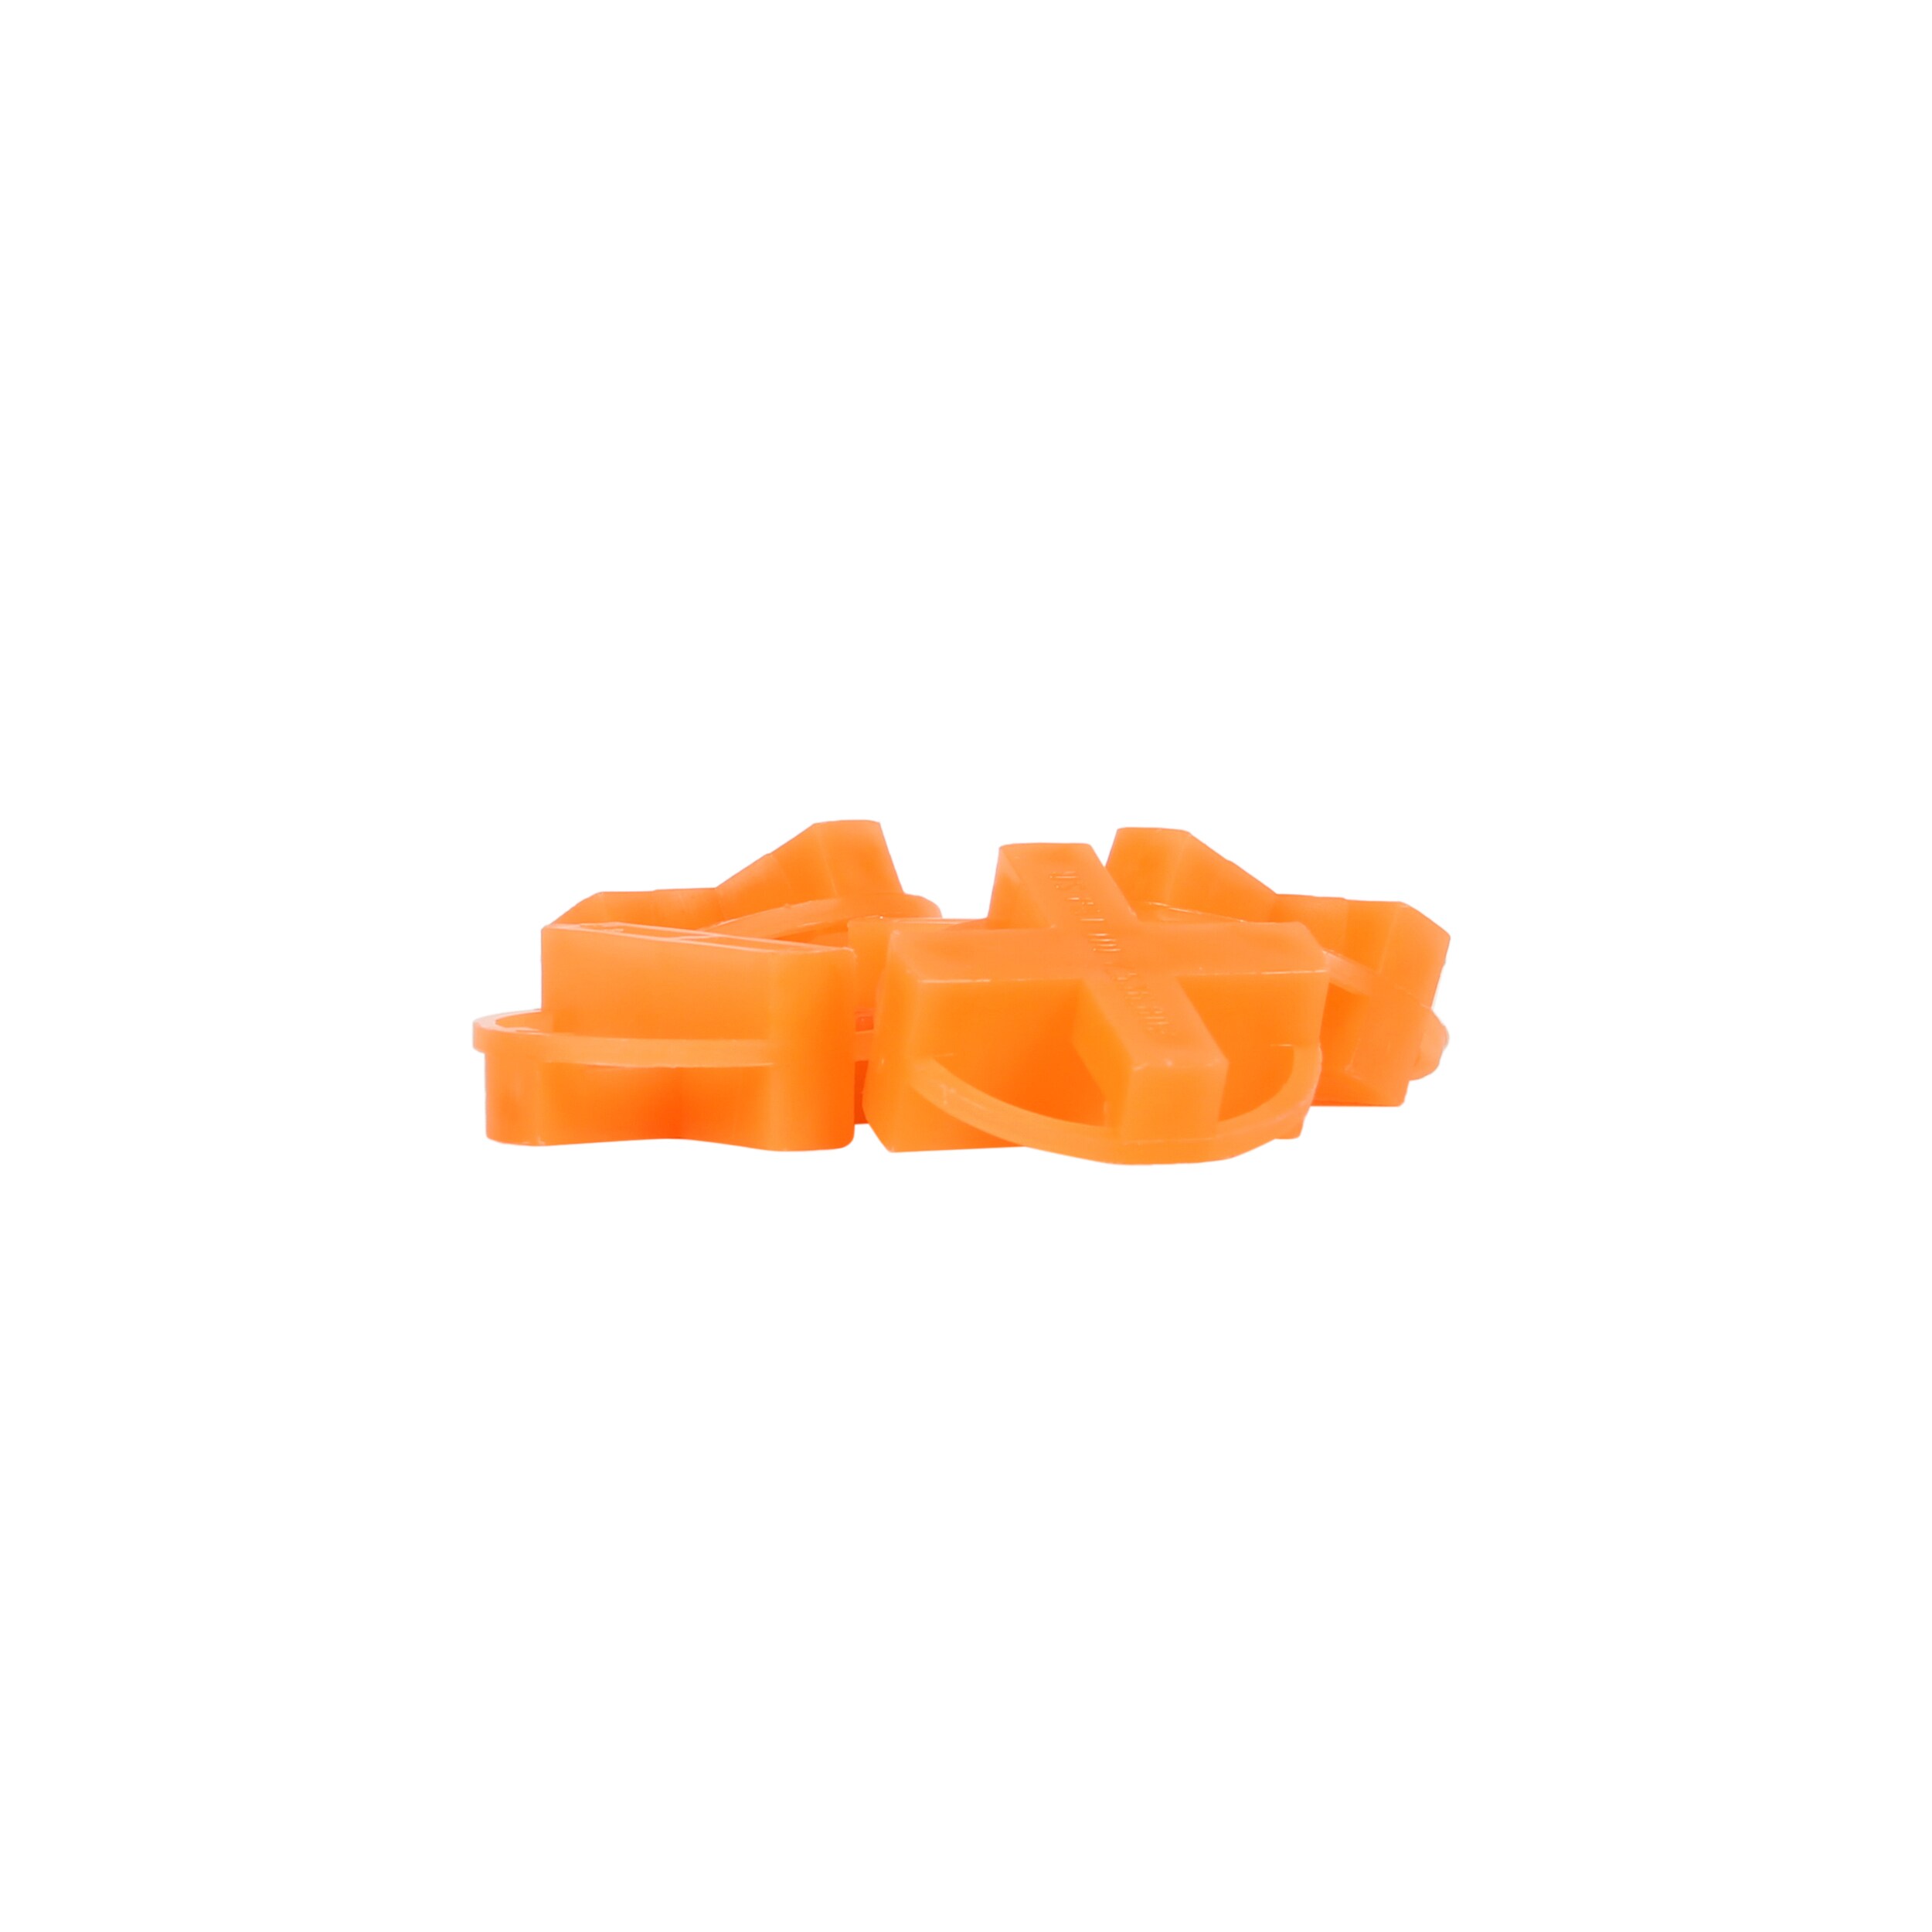 Tavy 100-Pack 1-In W X 1-In L 1/4-In Orange Plastic Tile Spacer 